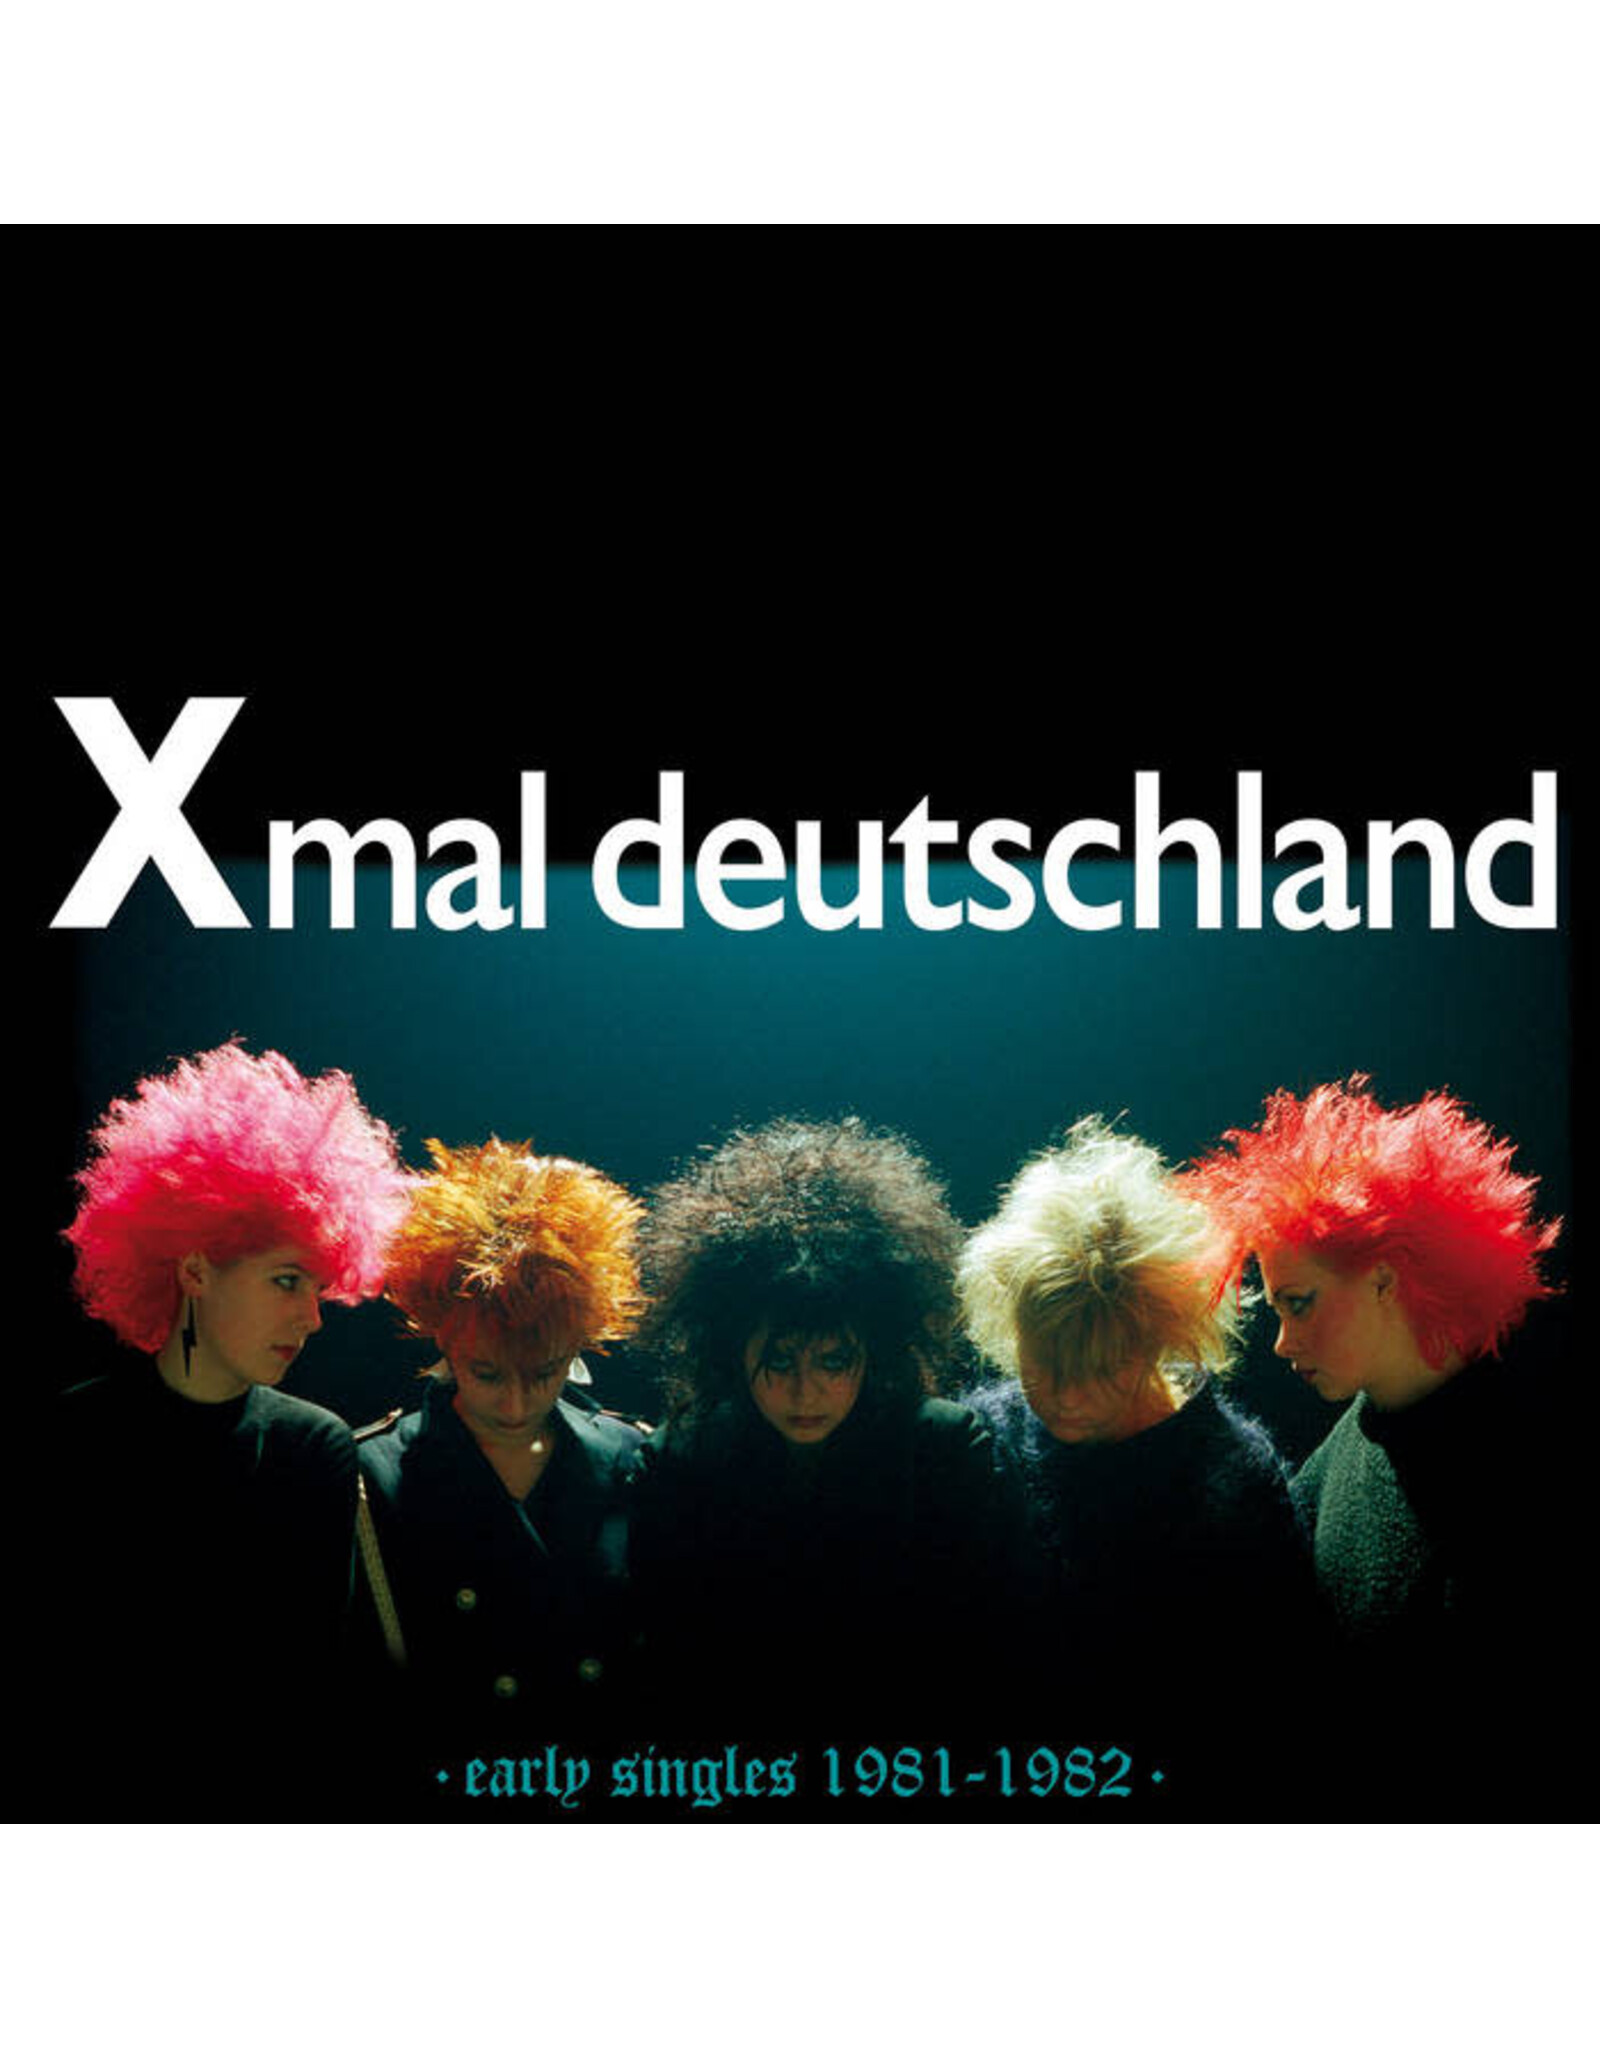 Sacred Bones Xmal Deutschland: Early Singles (1981-1982) (purple vinyl) LP